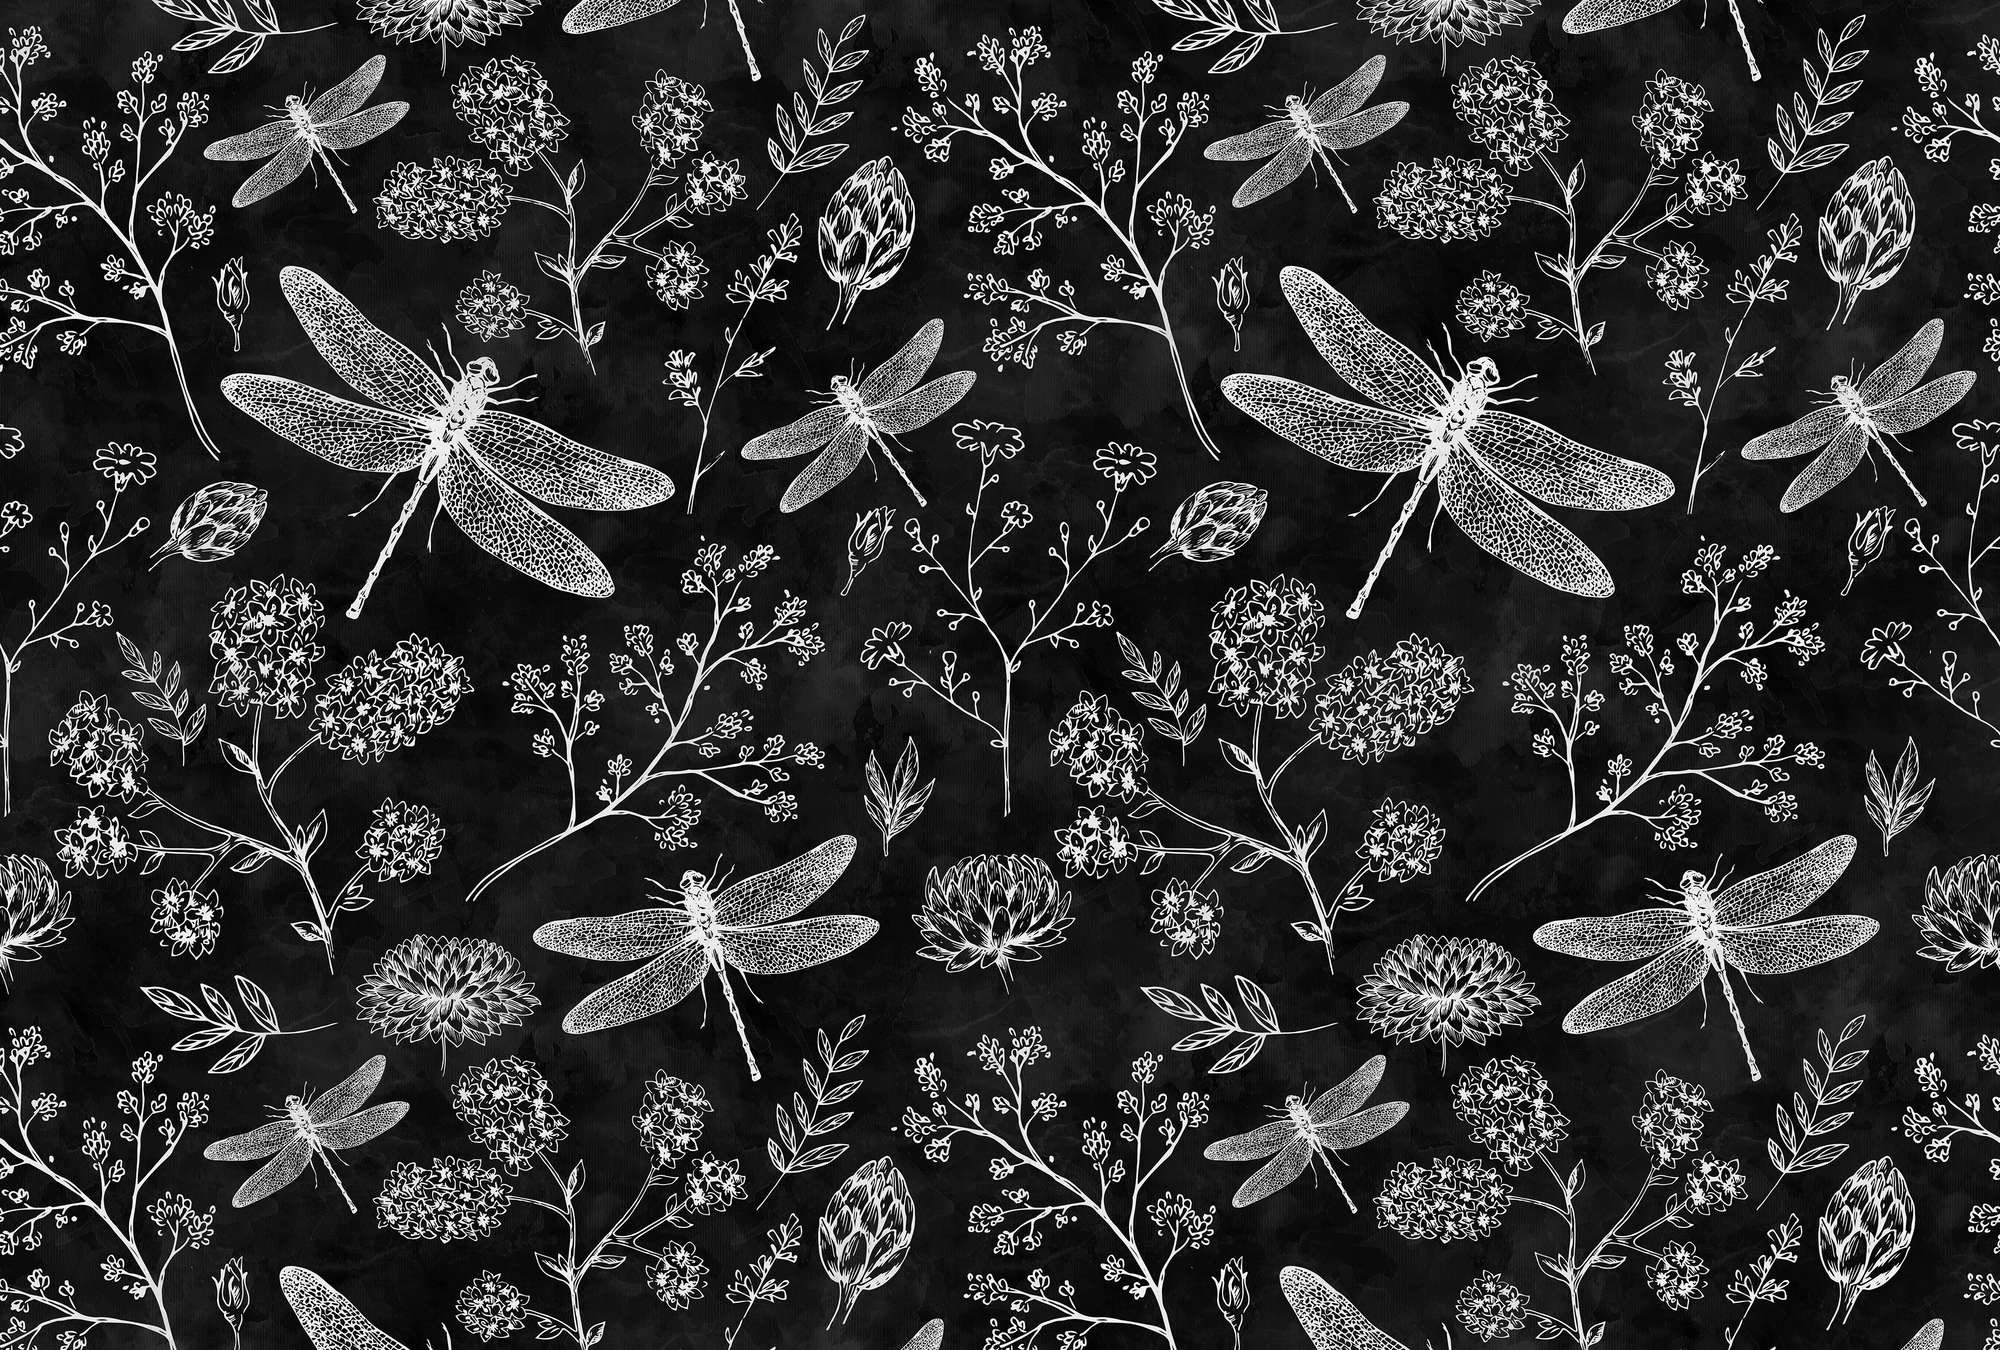             Papel pintado fotográfico en blanco y negro Libélulas y flores
        